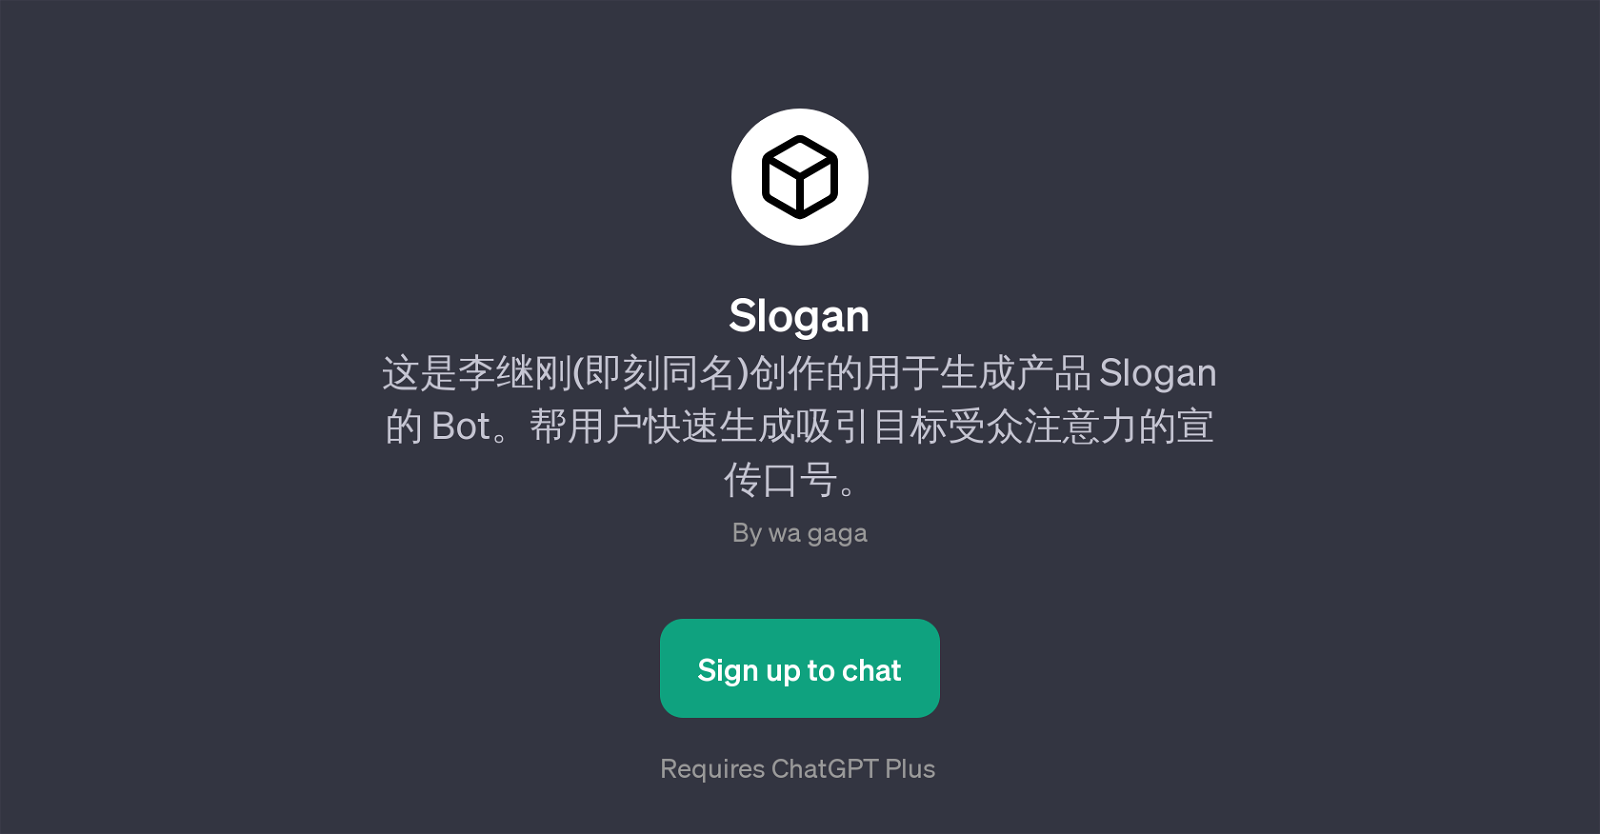 SloganPage website